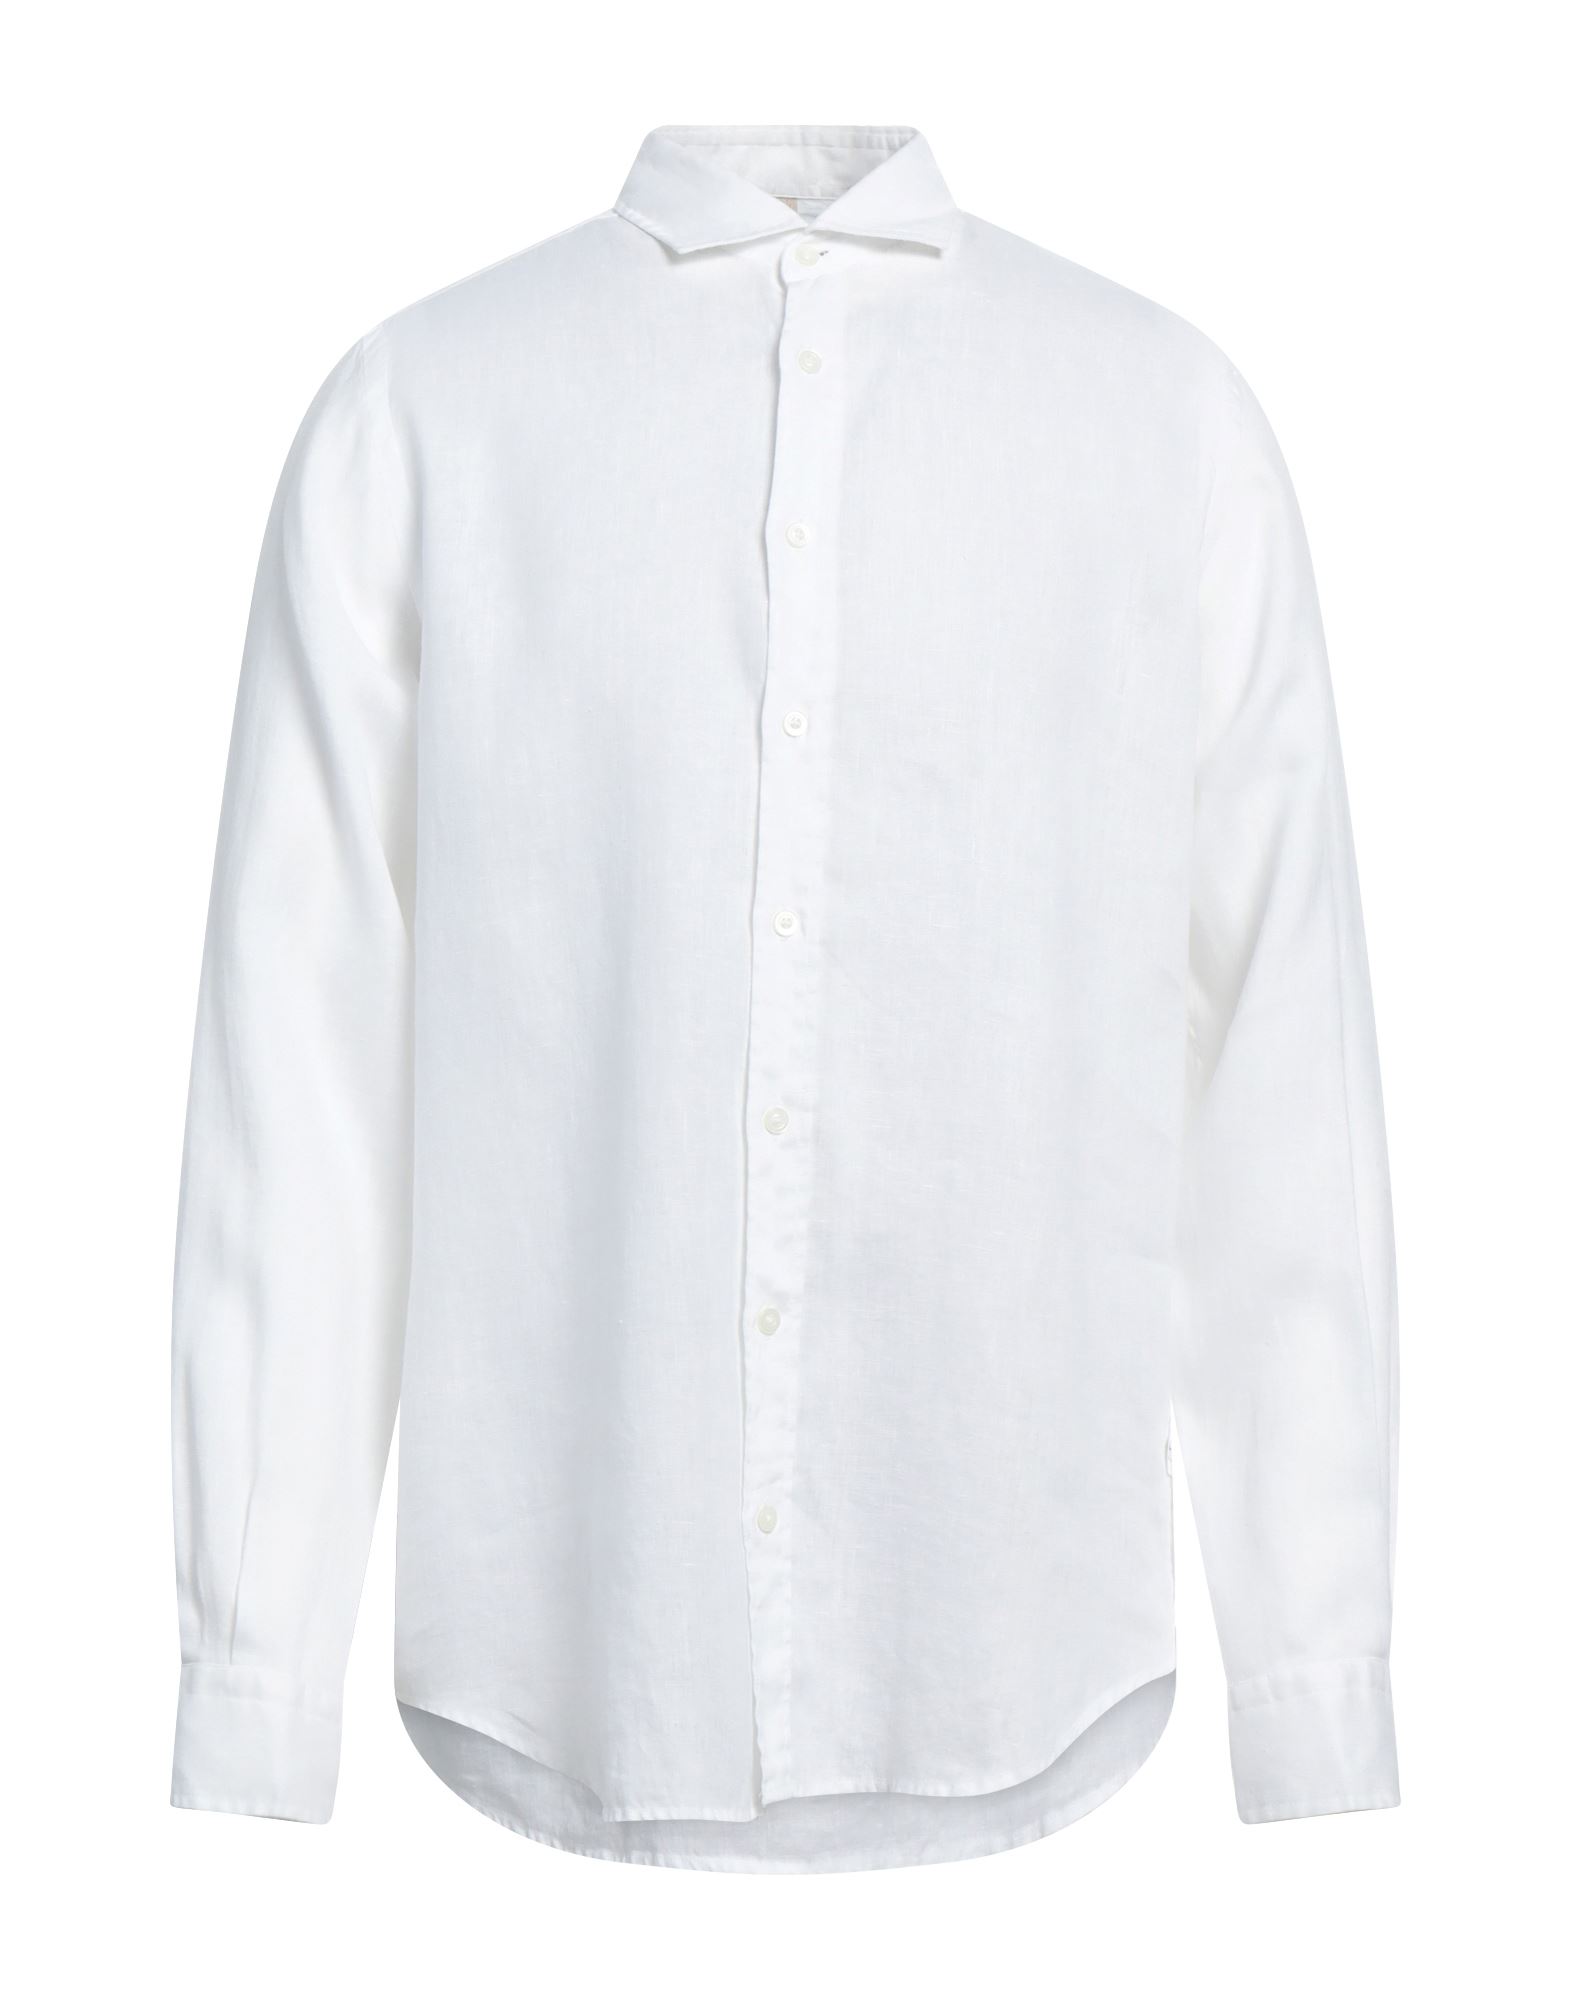 Portofiori Shirts In White